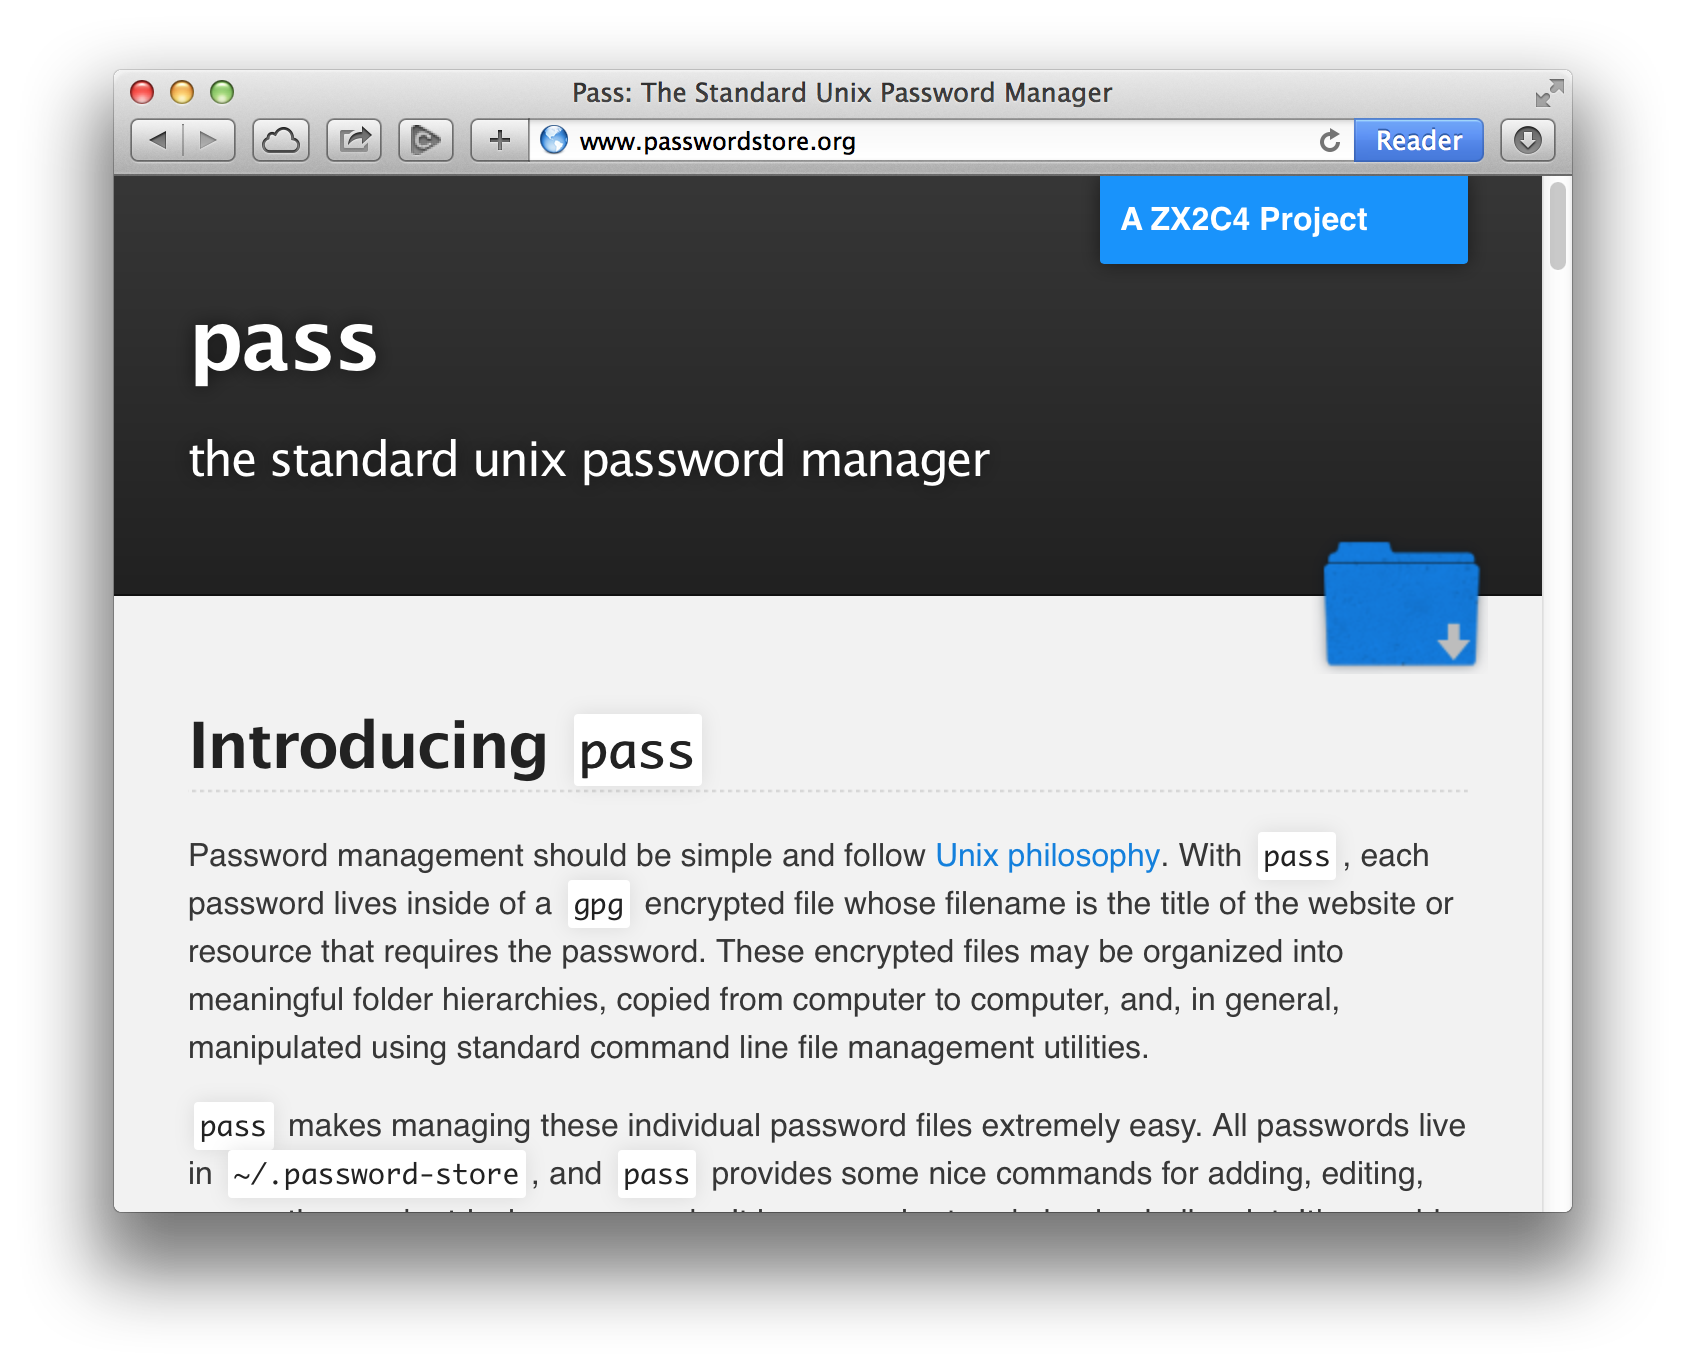 passwordstore.org